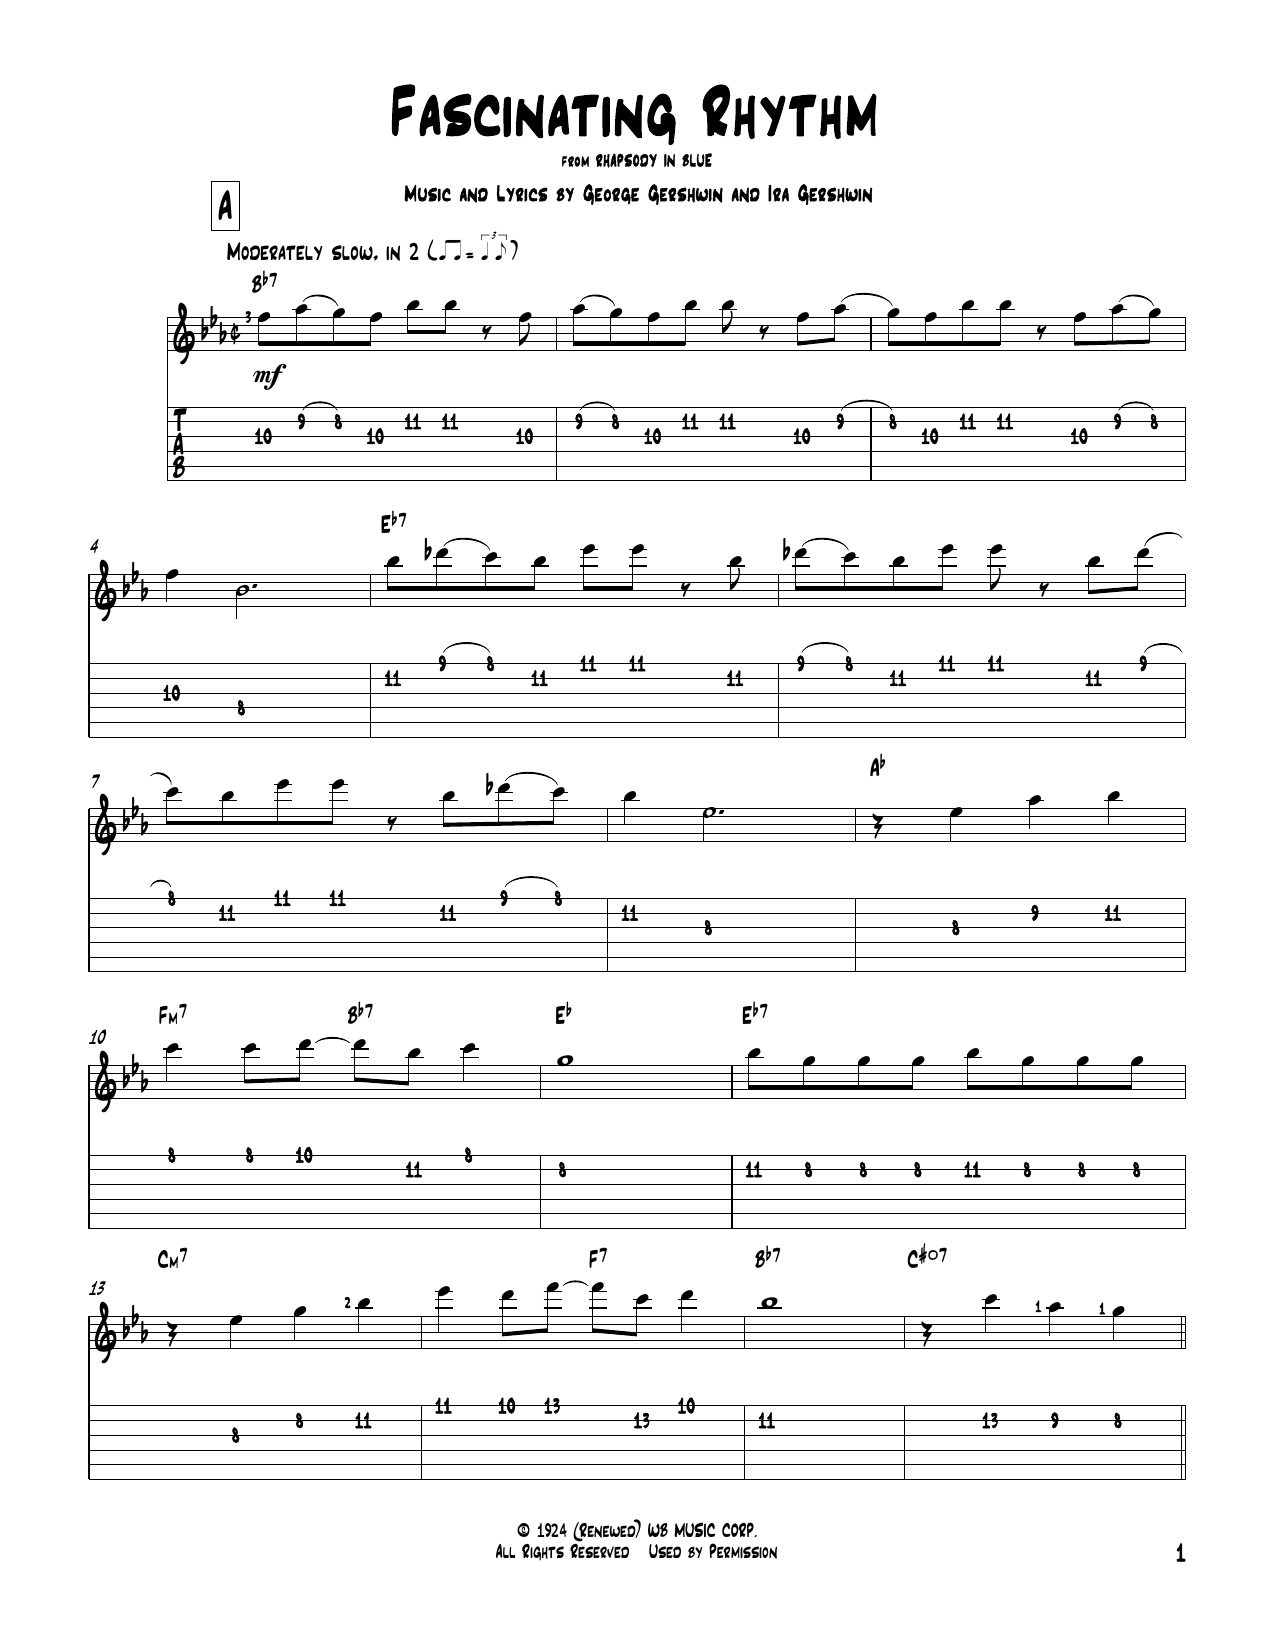 Download Ira Gershwin Fascinating Rhythm Sheet Music